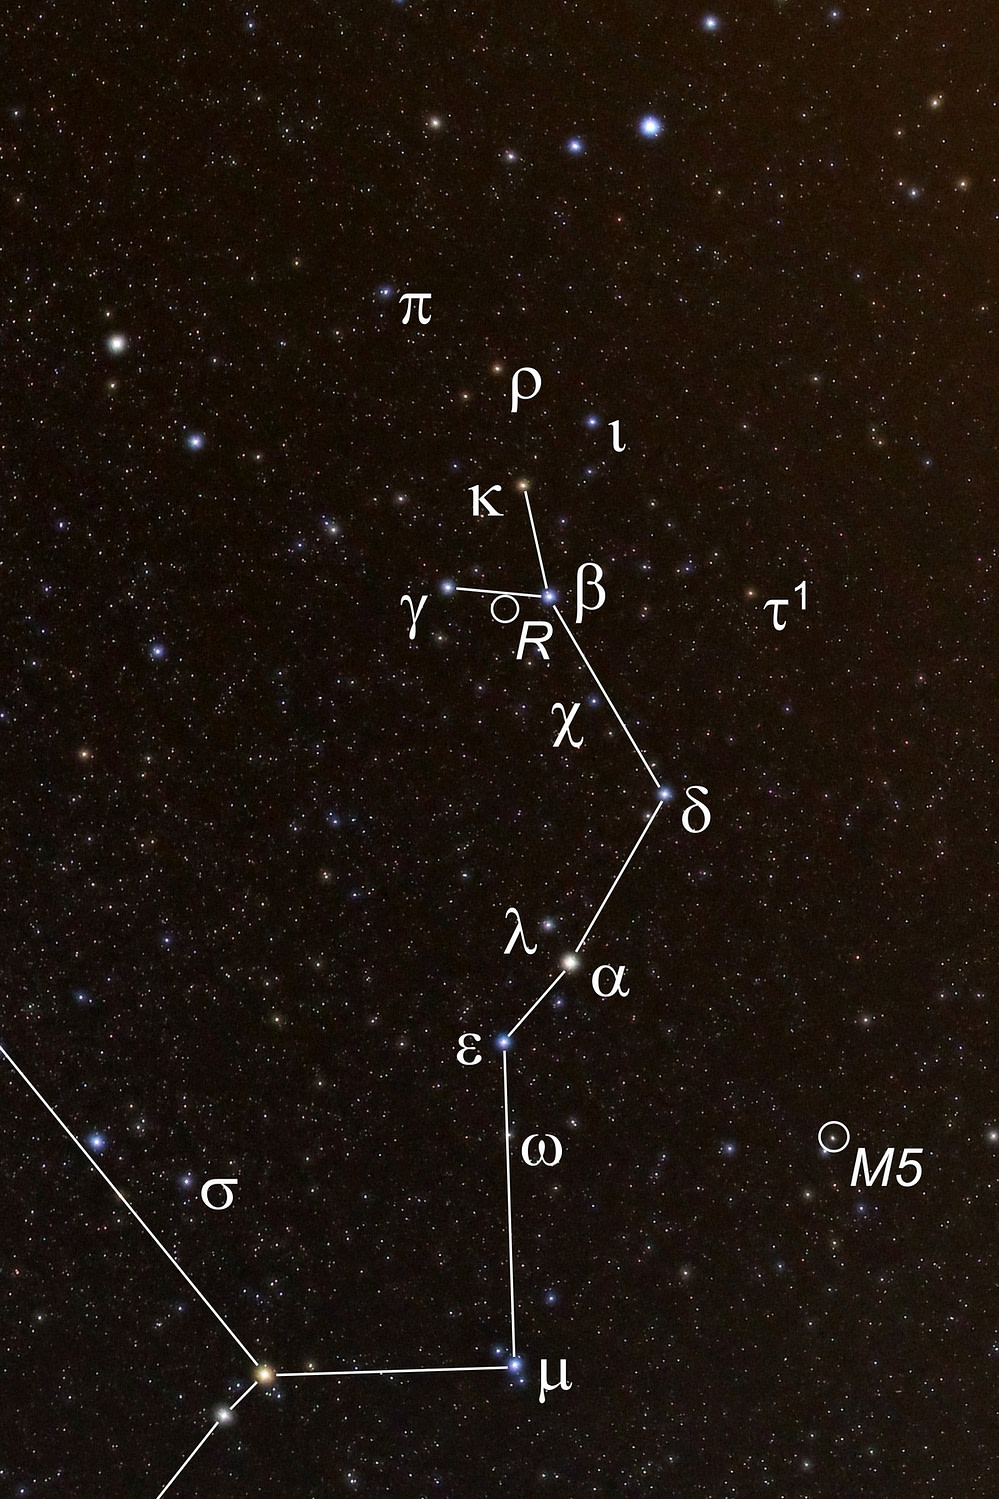 Die hellsten Sterne und besondere Beobachtungsobjekte im Kopf der Schlange, dem westlichen Teil des Sternbilds Schlange, sind mit ihren astronomischen Bezeichnungen markiert.